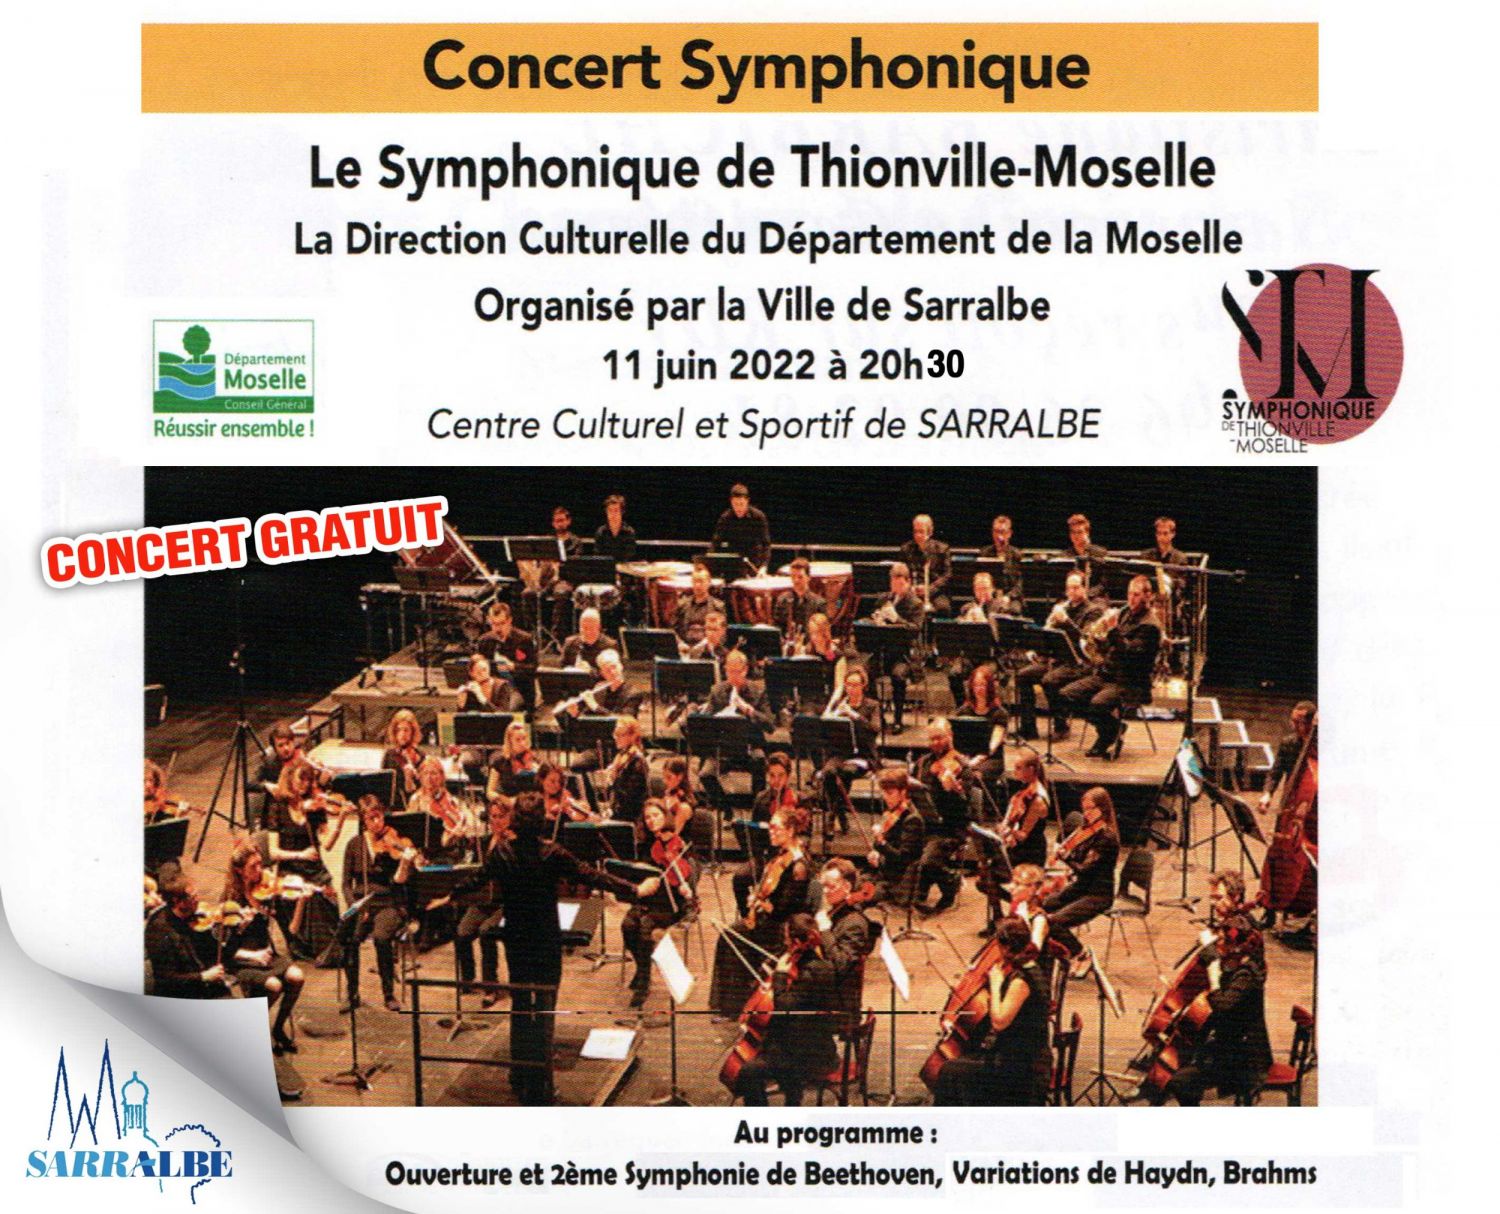 Concert Symphonique GRATUIT